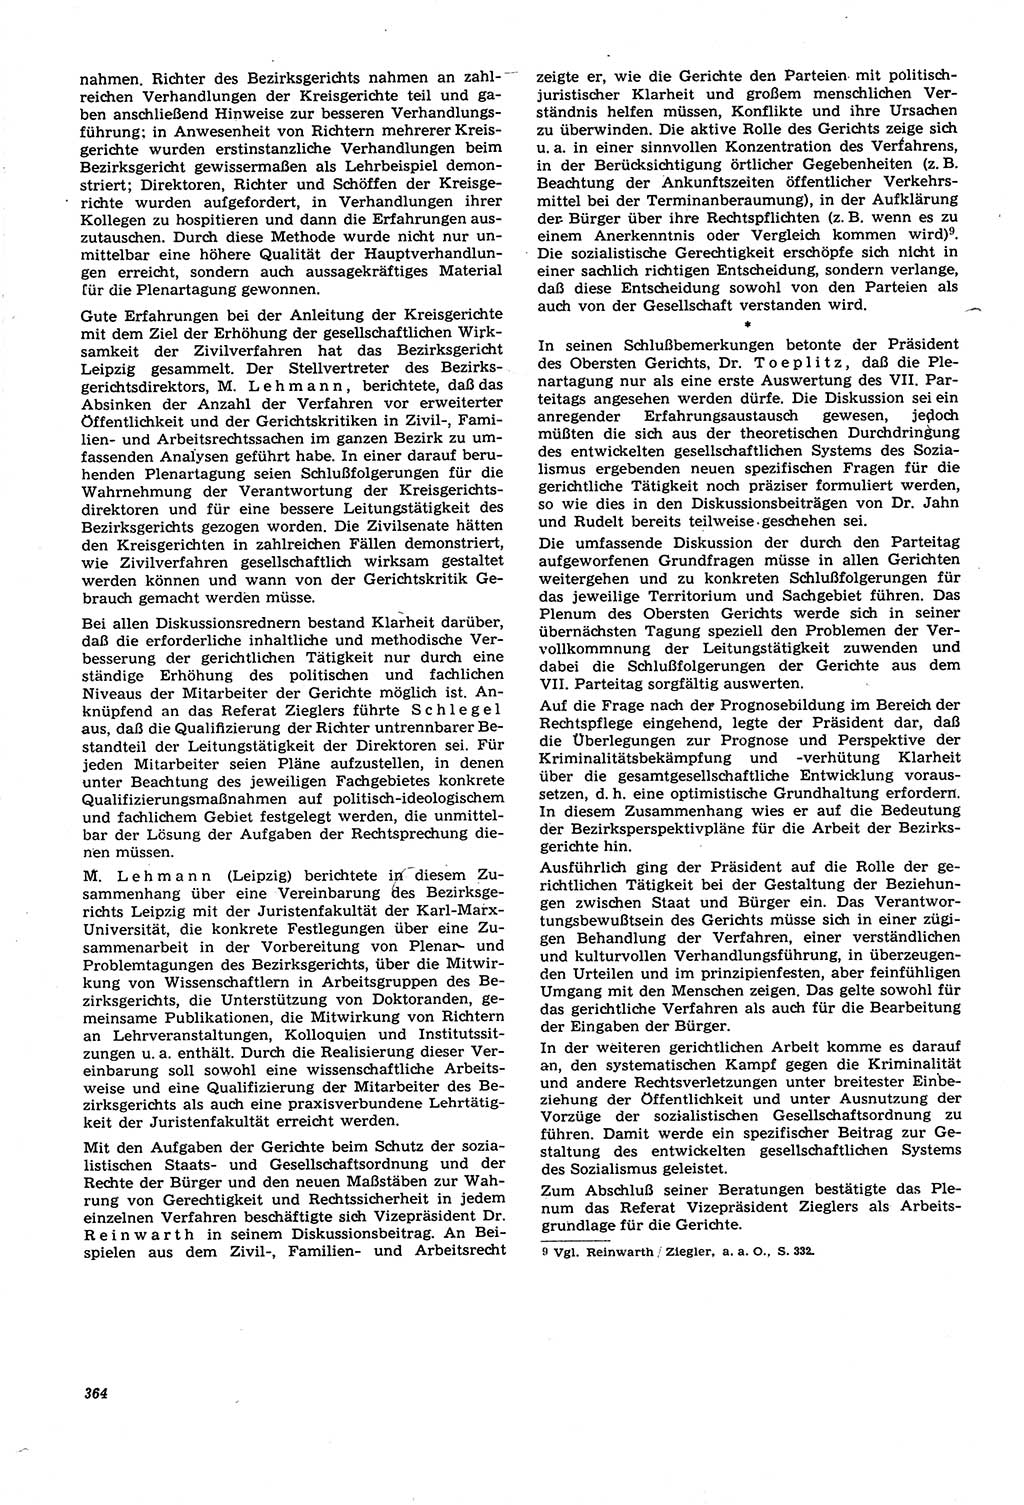 Neue Justiz (NJ), Zeitschrift für Recht und Rechtswissenschaft [Deutsche Demokratische Republik (DDR)], 21. Jahrgang 1967, Seite 364 (NJ DDR 1967, S. 364)